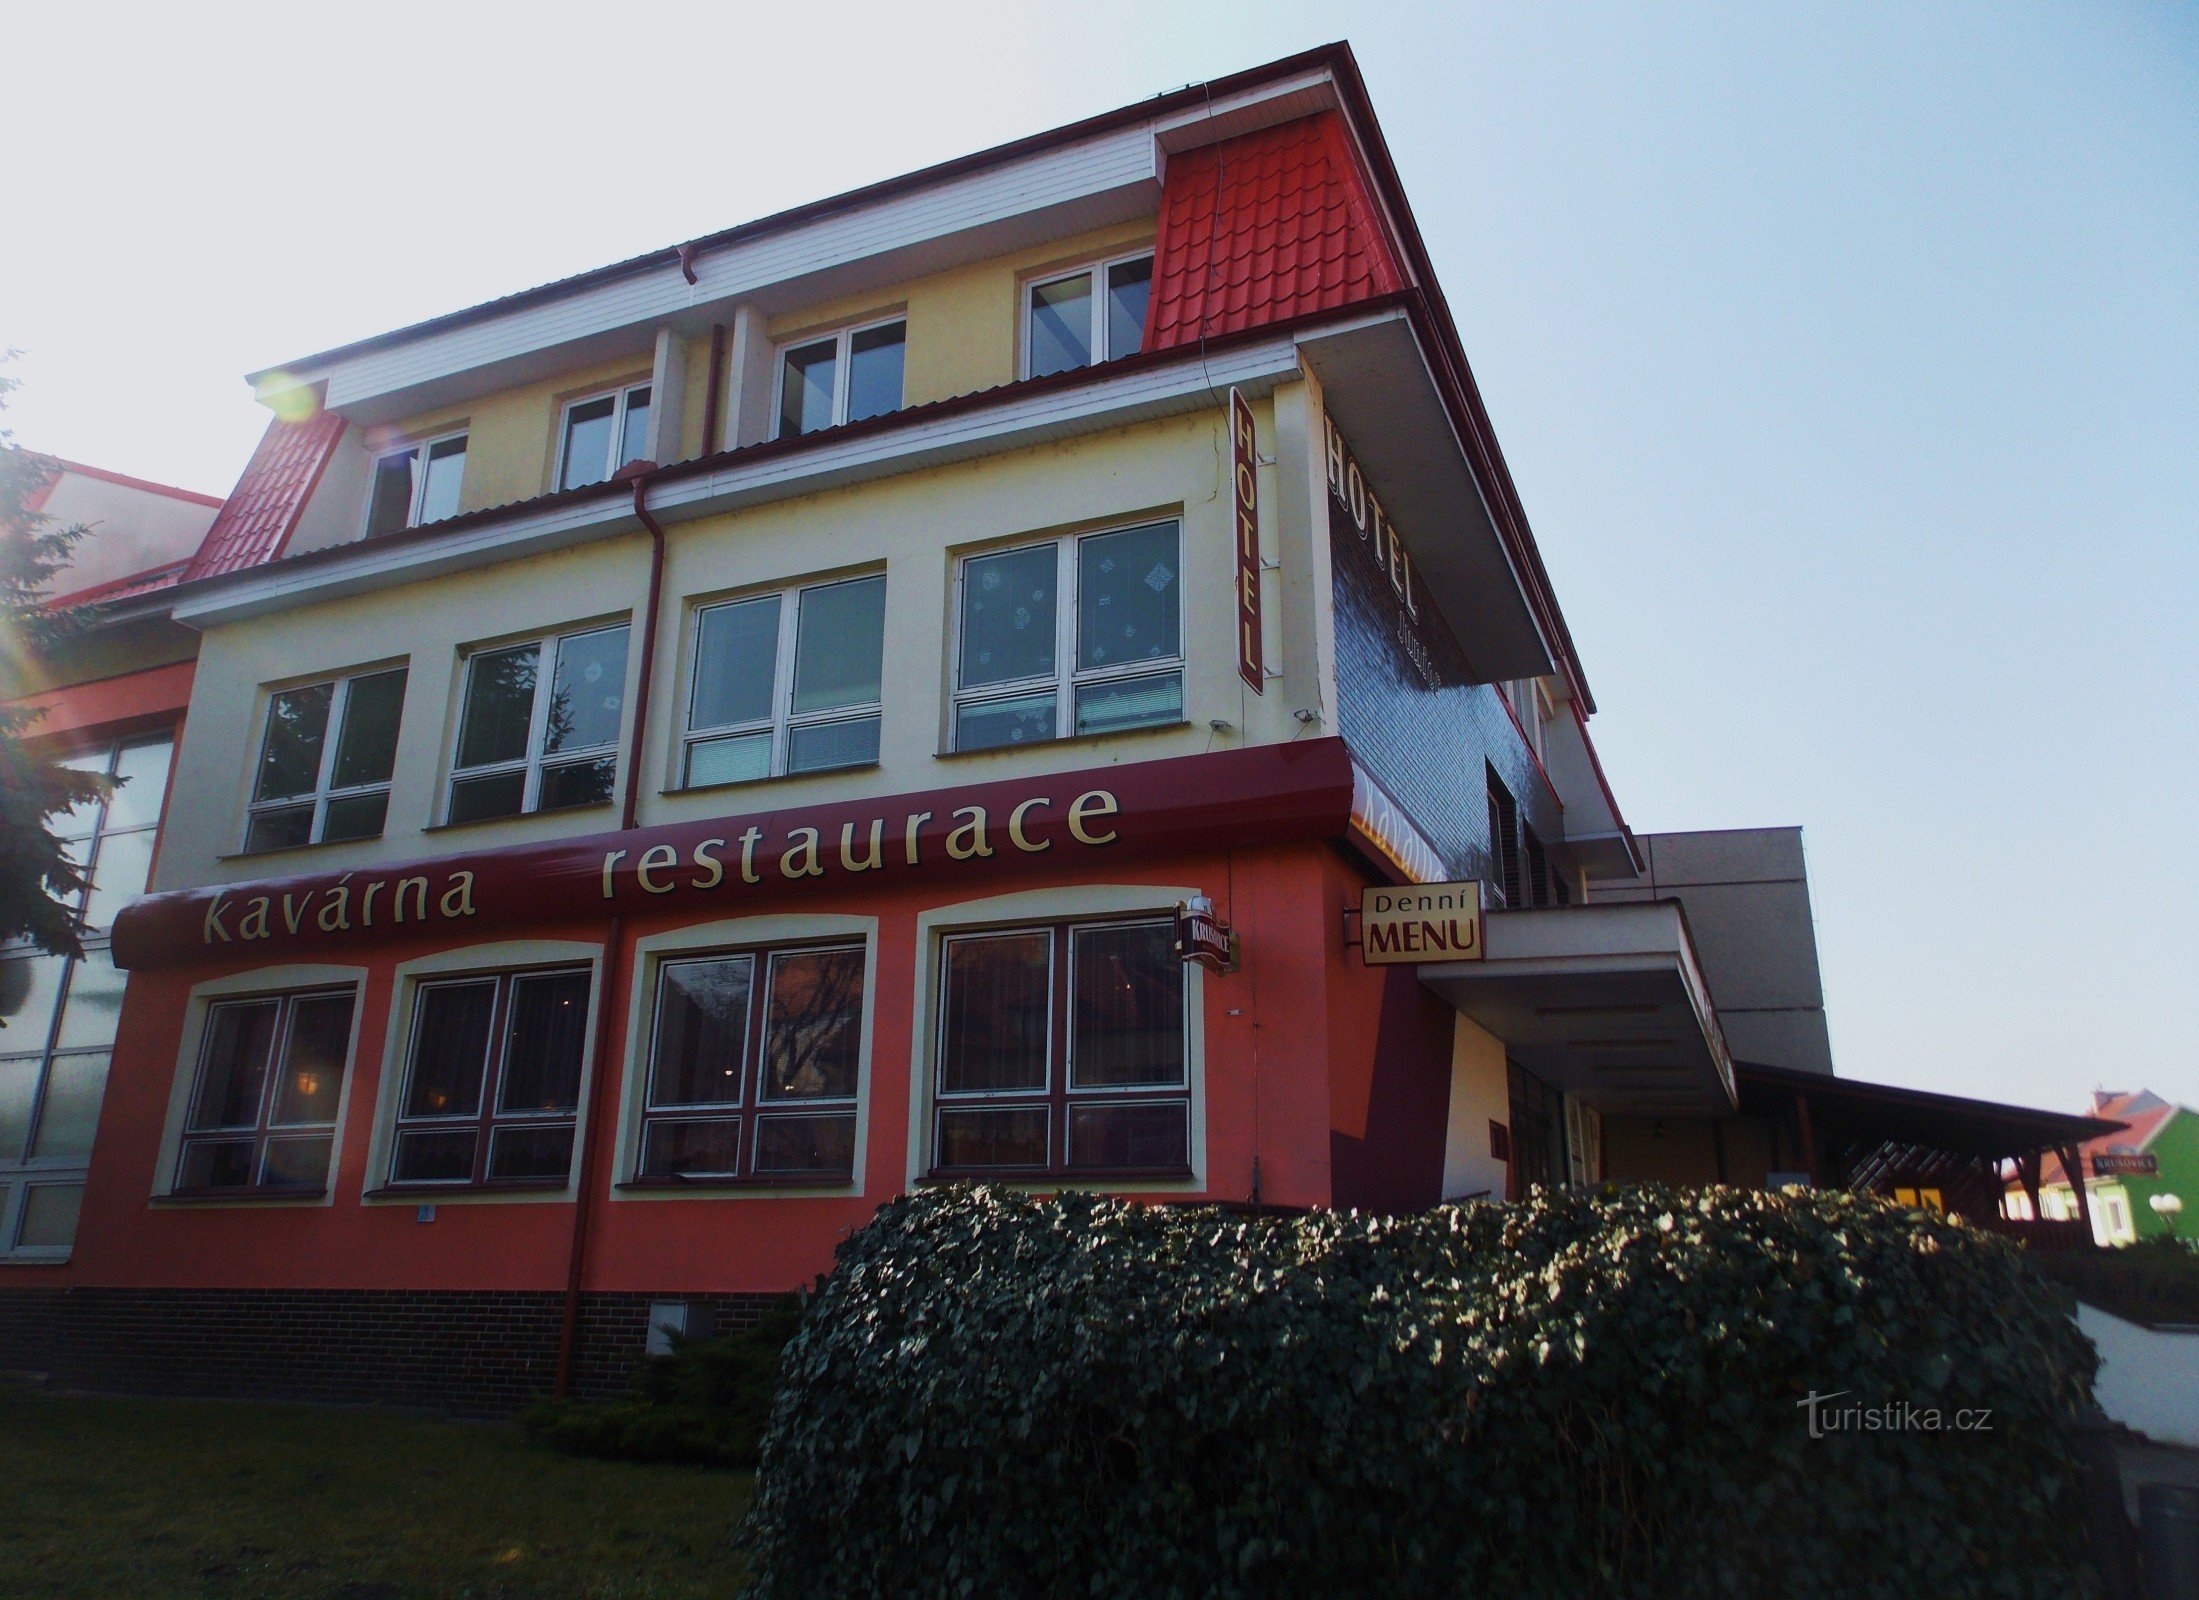 Hotel Junior med restaurant og cafe i byen Bzenci